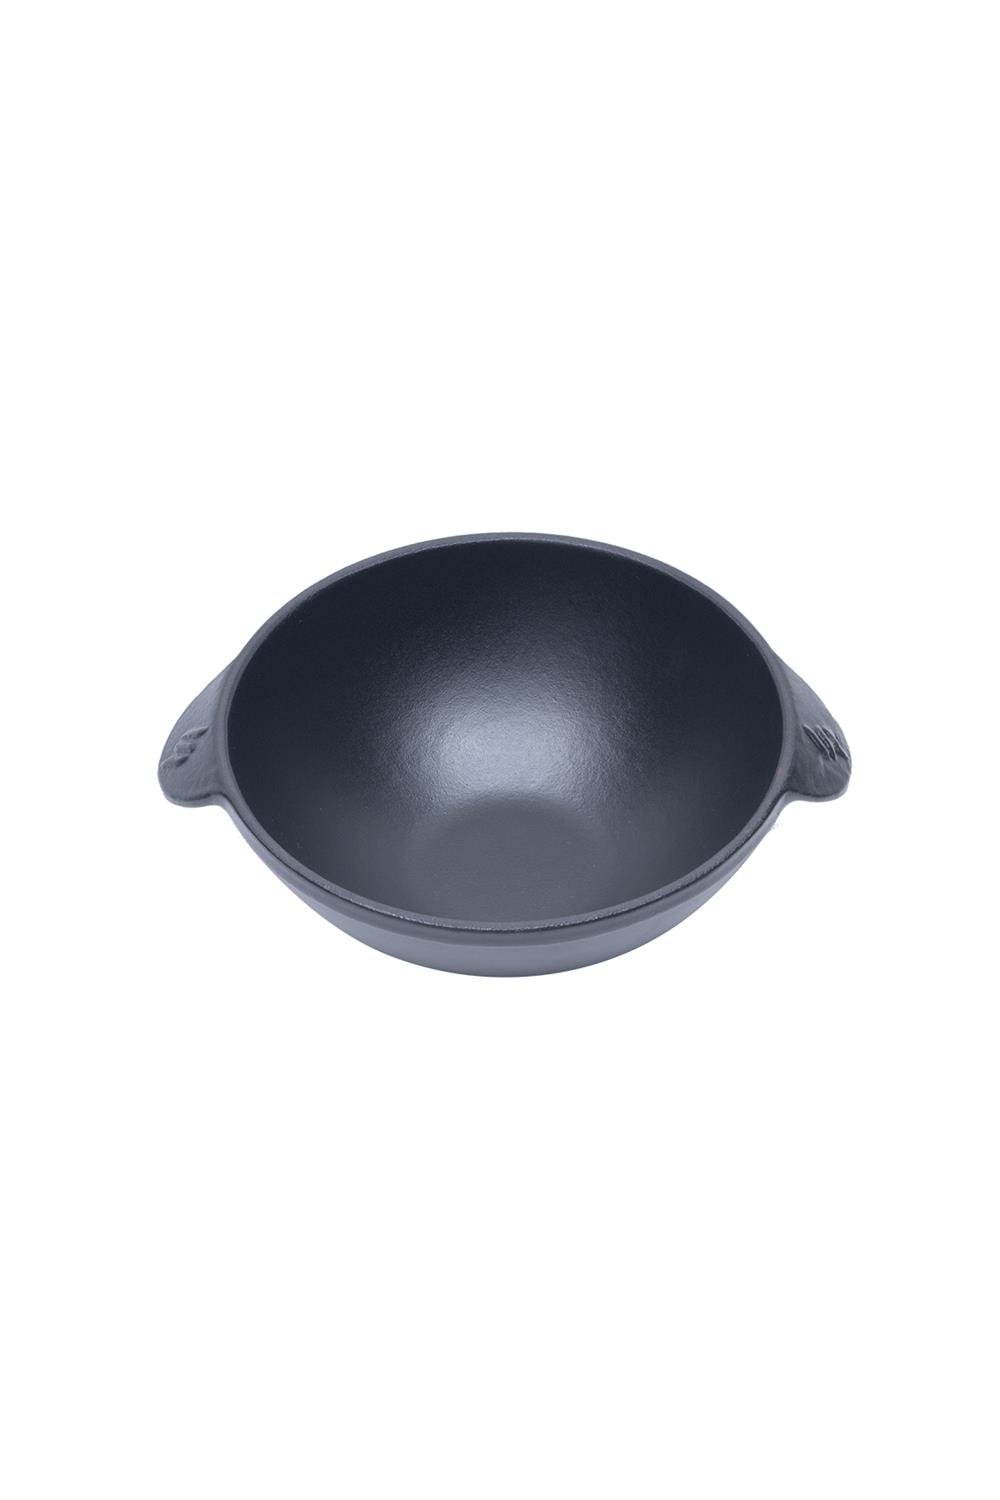 Sürel Demir Döküm Çorba Kasesi 15 cm - Sürel - Duygun Home - Kozmetik,  Hazırlık ve Pişirme Ürünleri